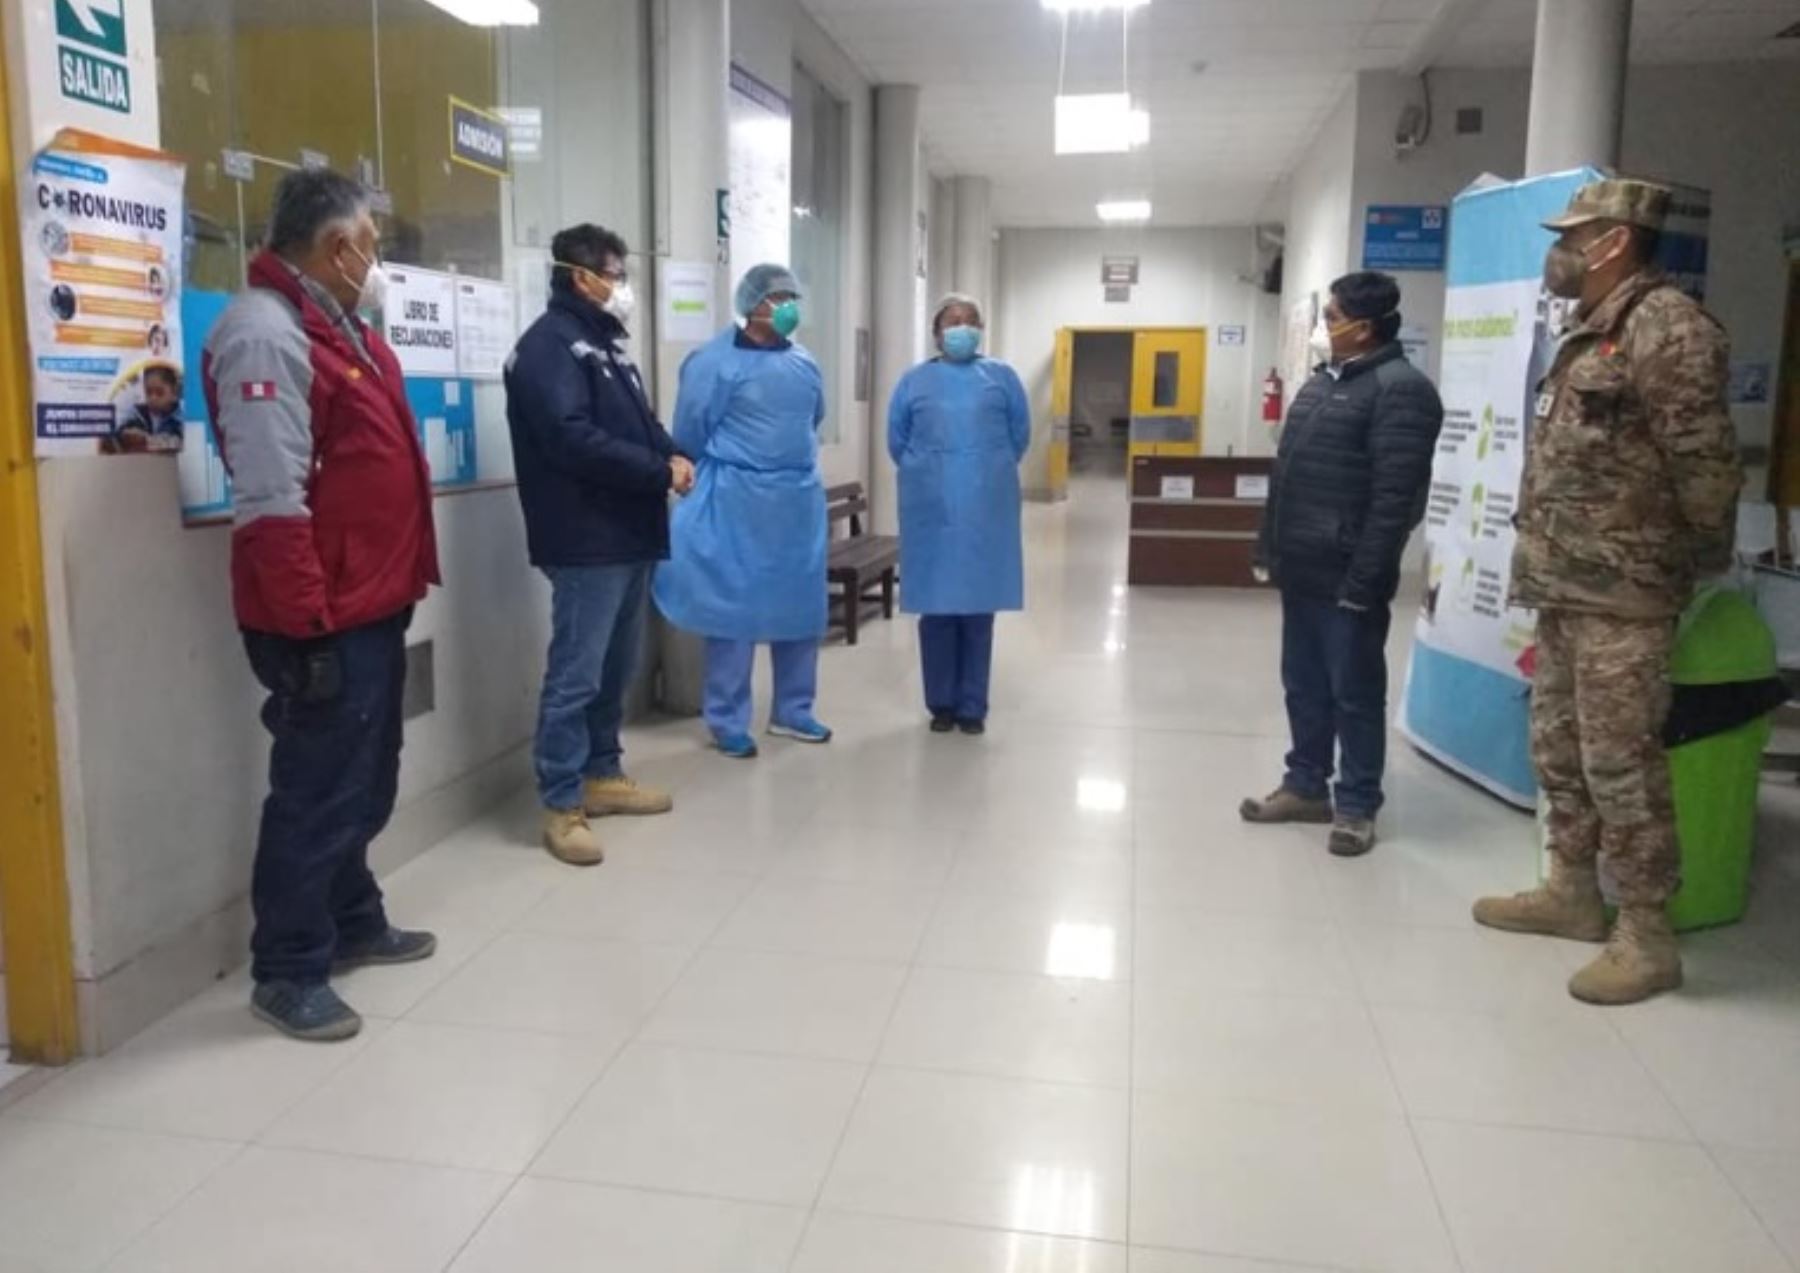 El gobierno regional de Tacna está redoblando los esfuerzos para contener el crecimiento moderado de contagios por covid-19, registrado desde el levantamiento del estado de emergencia nacional. Según la Dirección Regional de Salud (Diresa), al 8 de julio, suman 1,325 casos positivos, 650 pacientes en aislamiento, 38 hospitalizados, 18 en Unidad de Cuidados Intensivos (UCI) y 22 fallecidos por coronavirus.